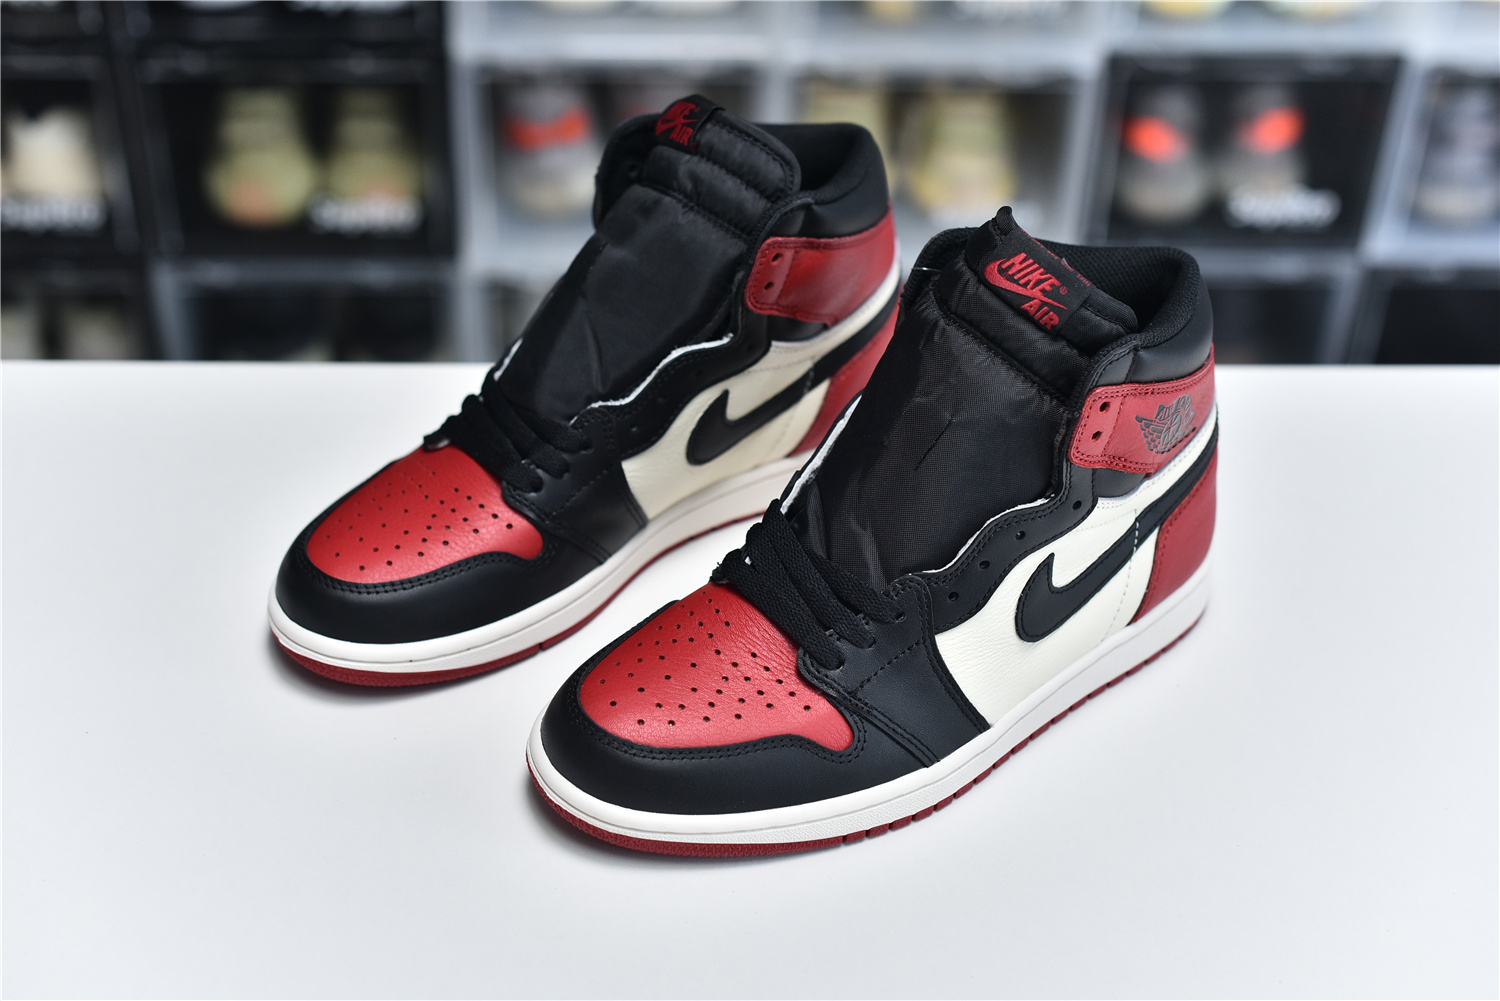 Nike Air Jordan 1 RETRO High OG Red Black White Men Sneakers 555088 610 kickbulk 8